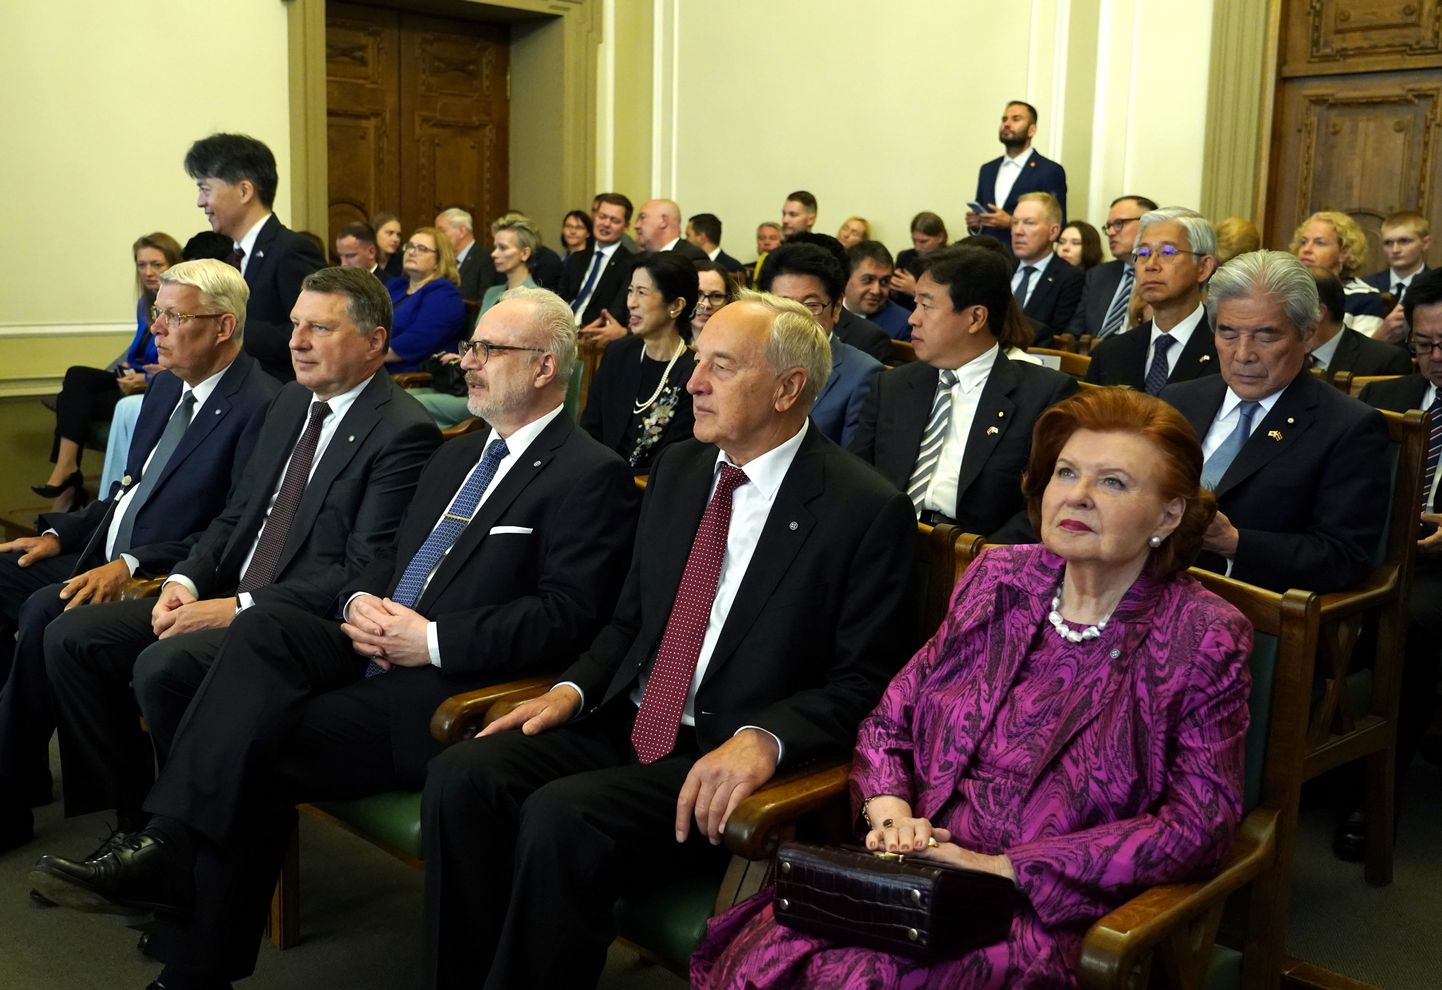 Бывшие президенты Латвии. Слева направо: Валдис Затлерс, Раймондс Вейонис, Эгил Левитс, Андрис Берзиньш и Вайра Вике-Фрейберга